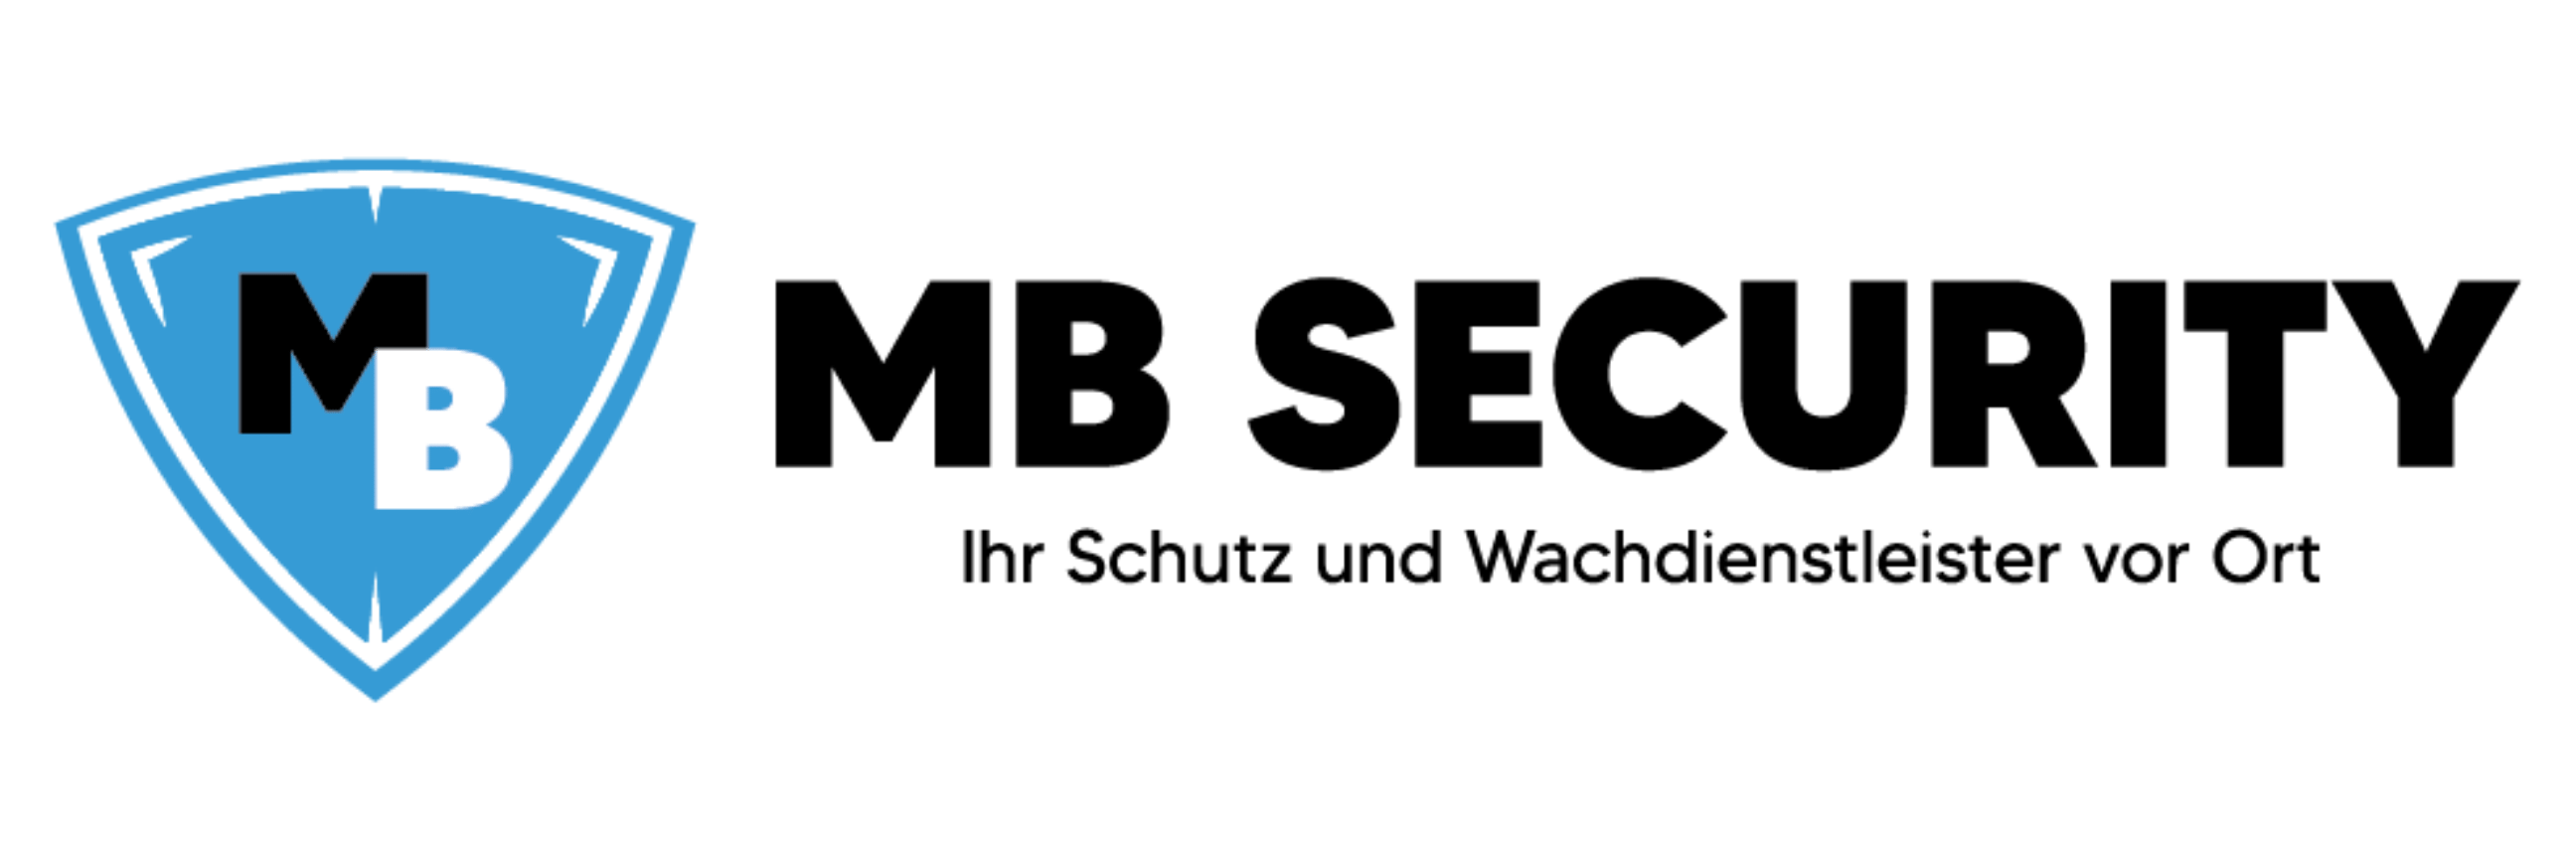 MB Security Logo